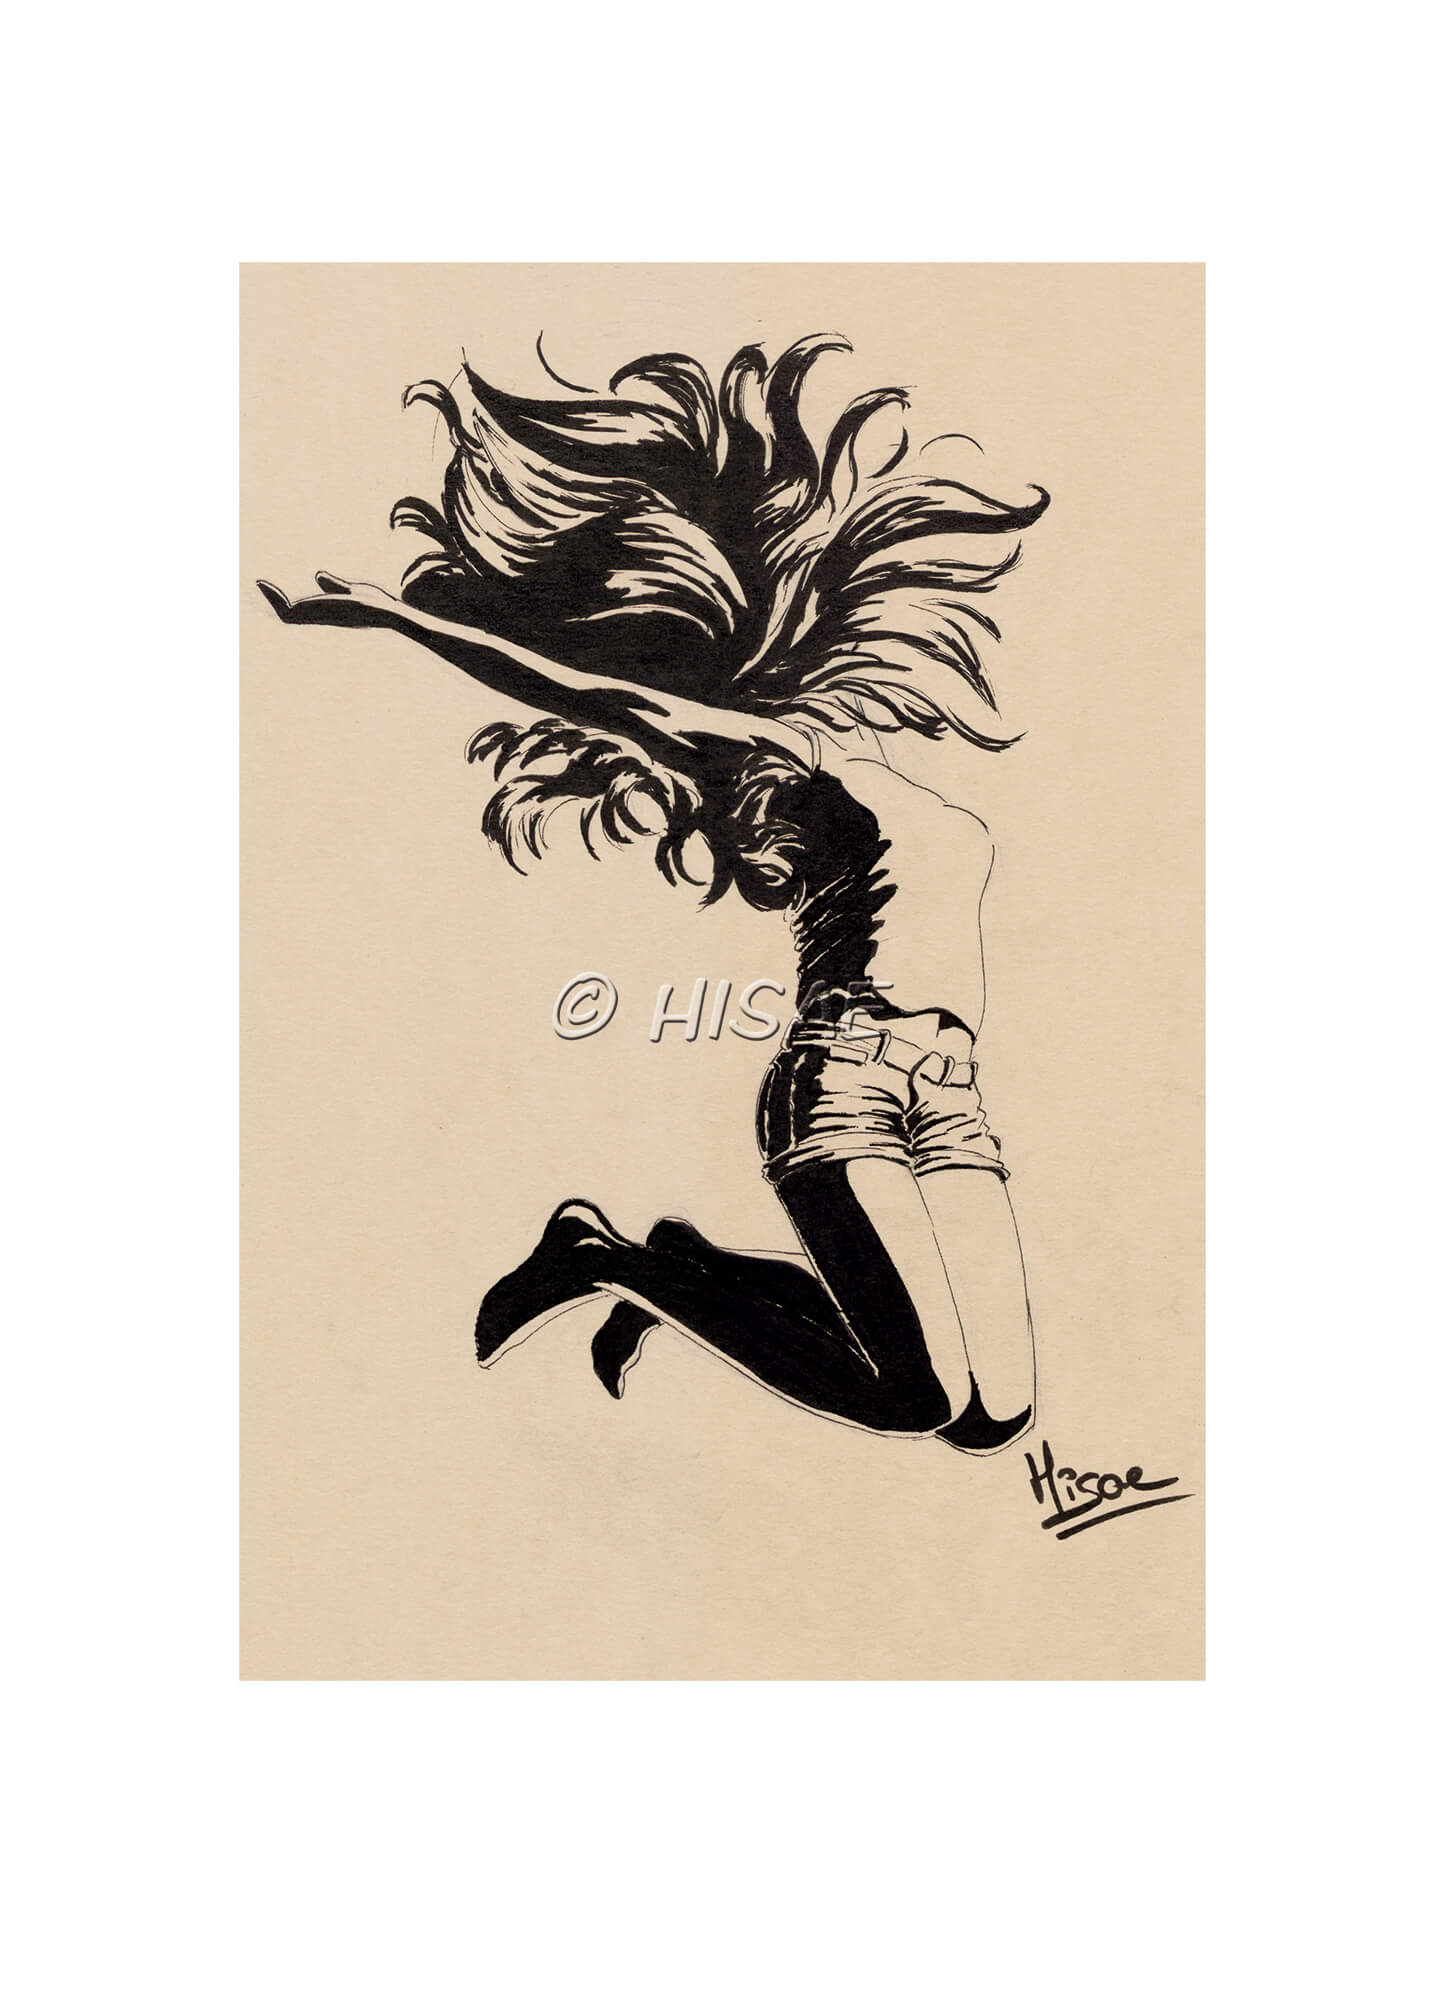 Impression laser d'un dessin à l'encre représentation une femme qui saute de joie ©Hisae illustrations